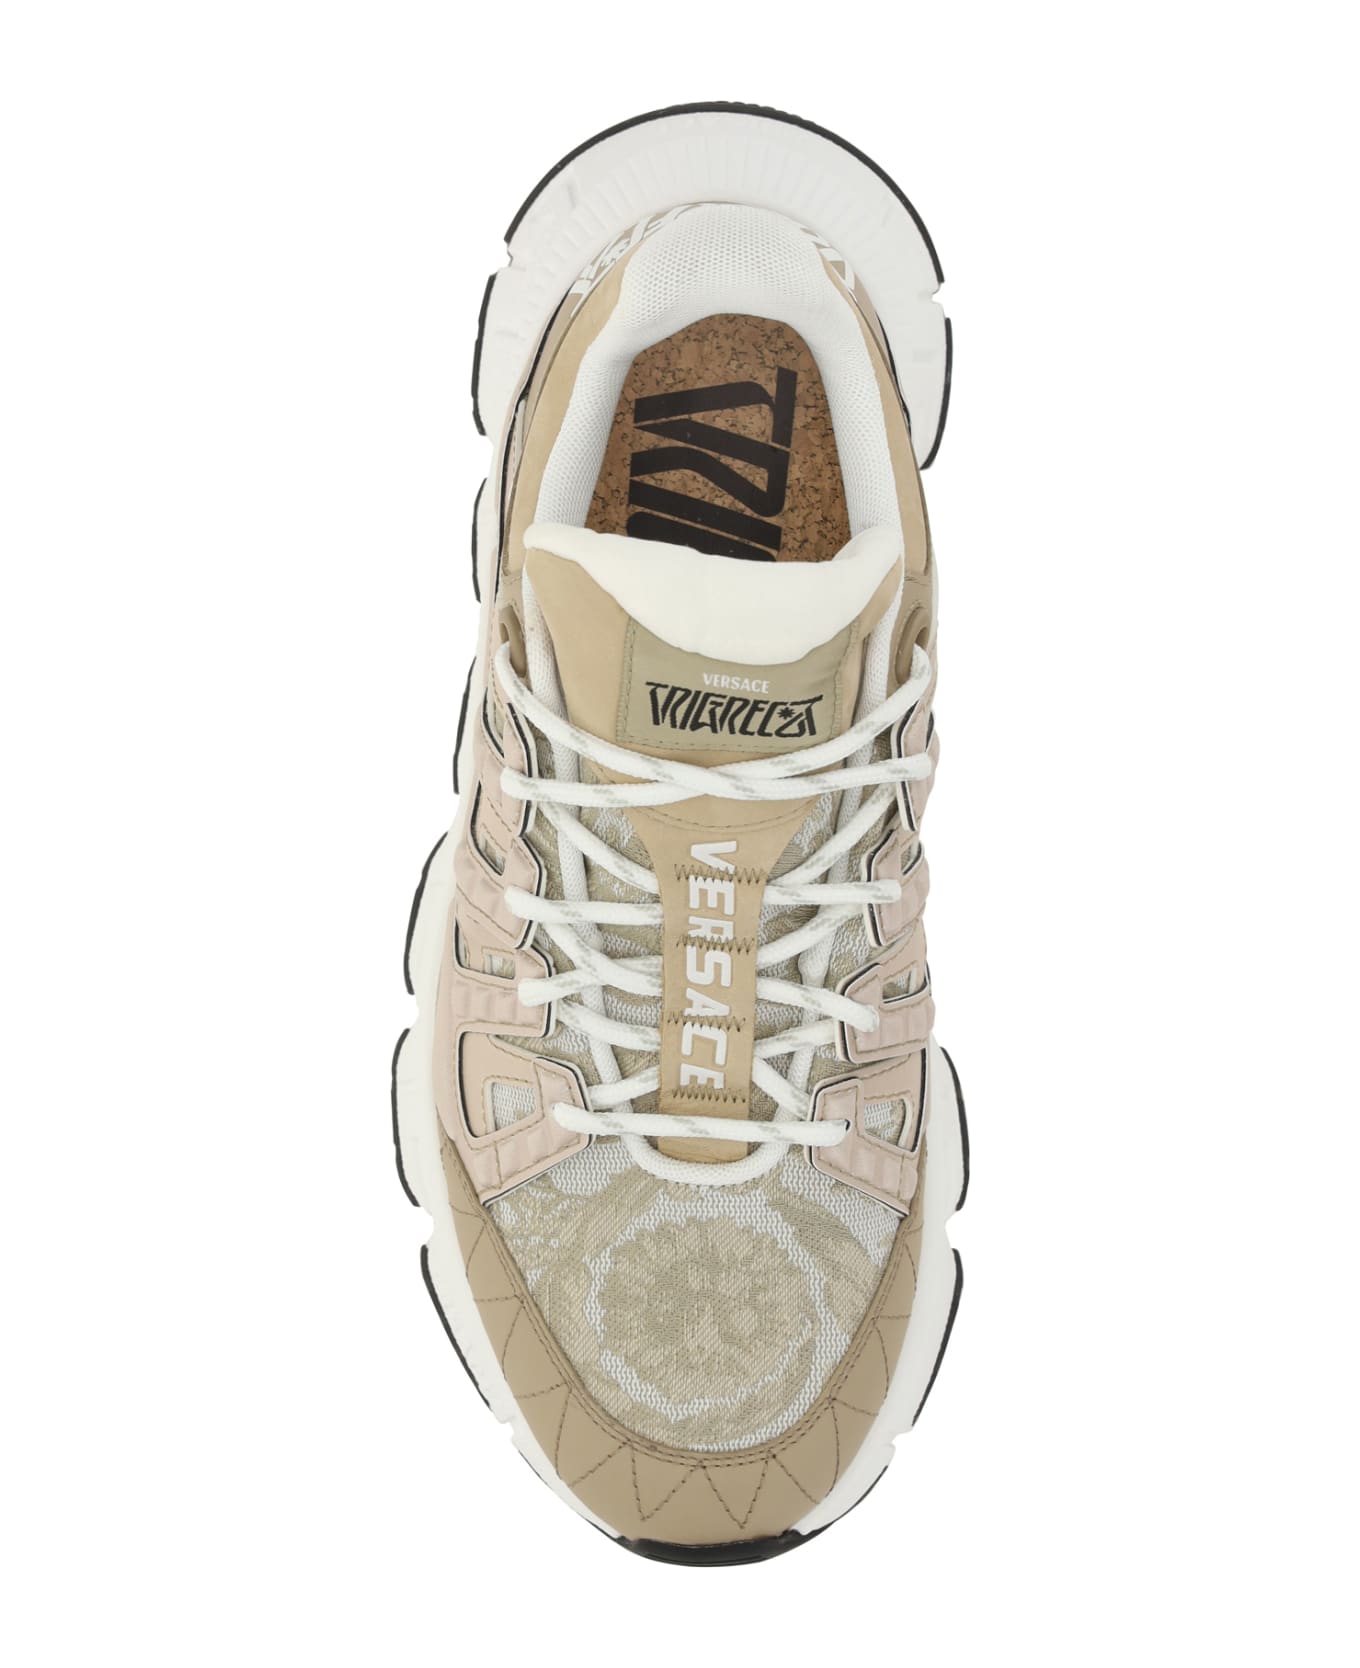 Versace Trigreca Sneakers - Beige/beige